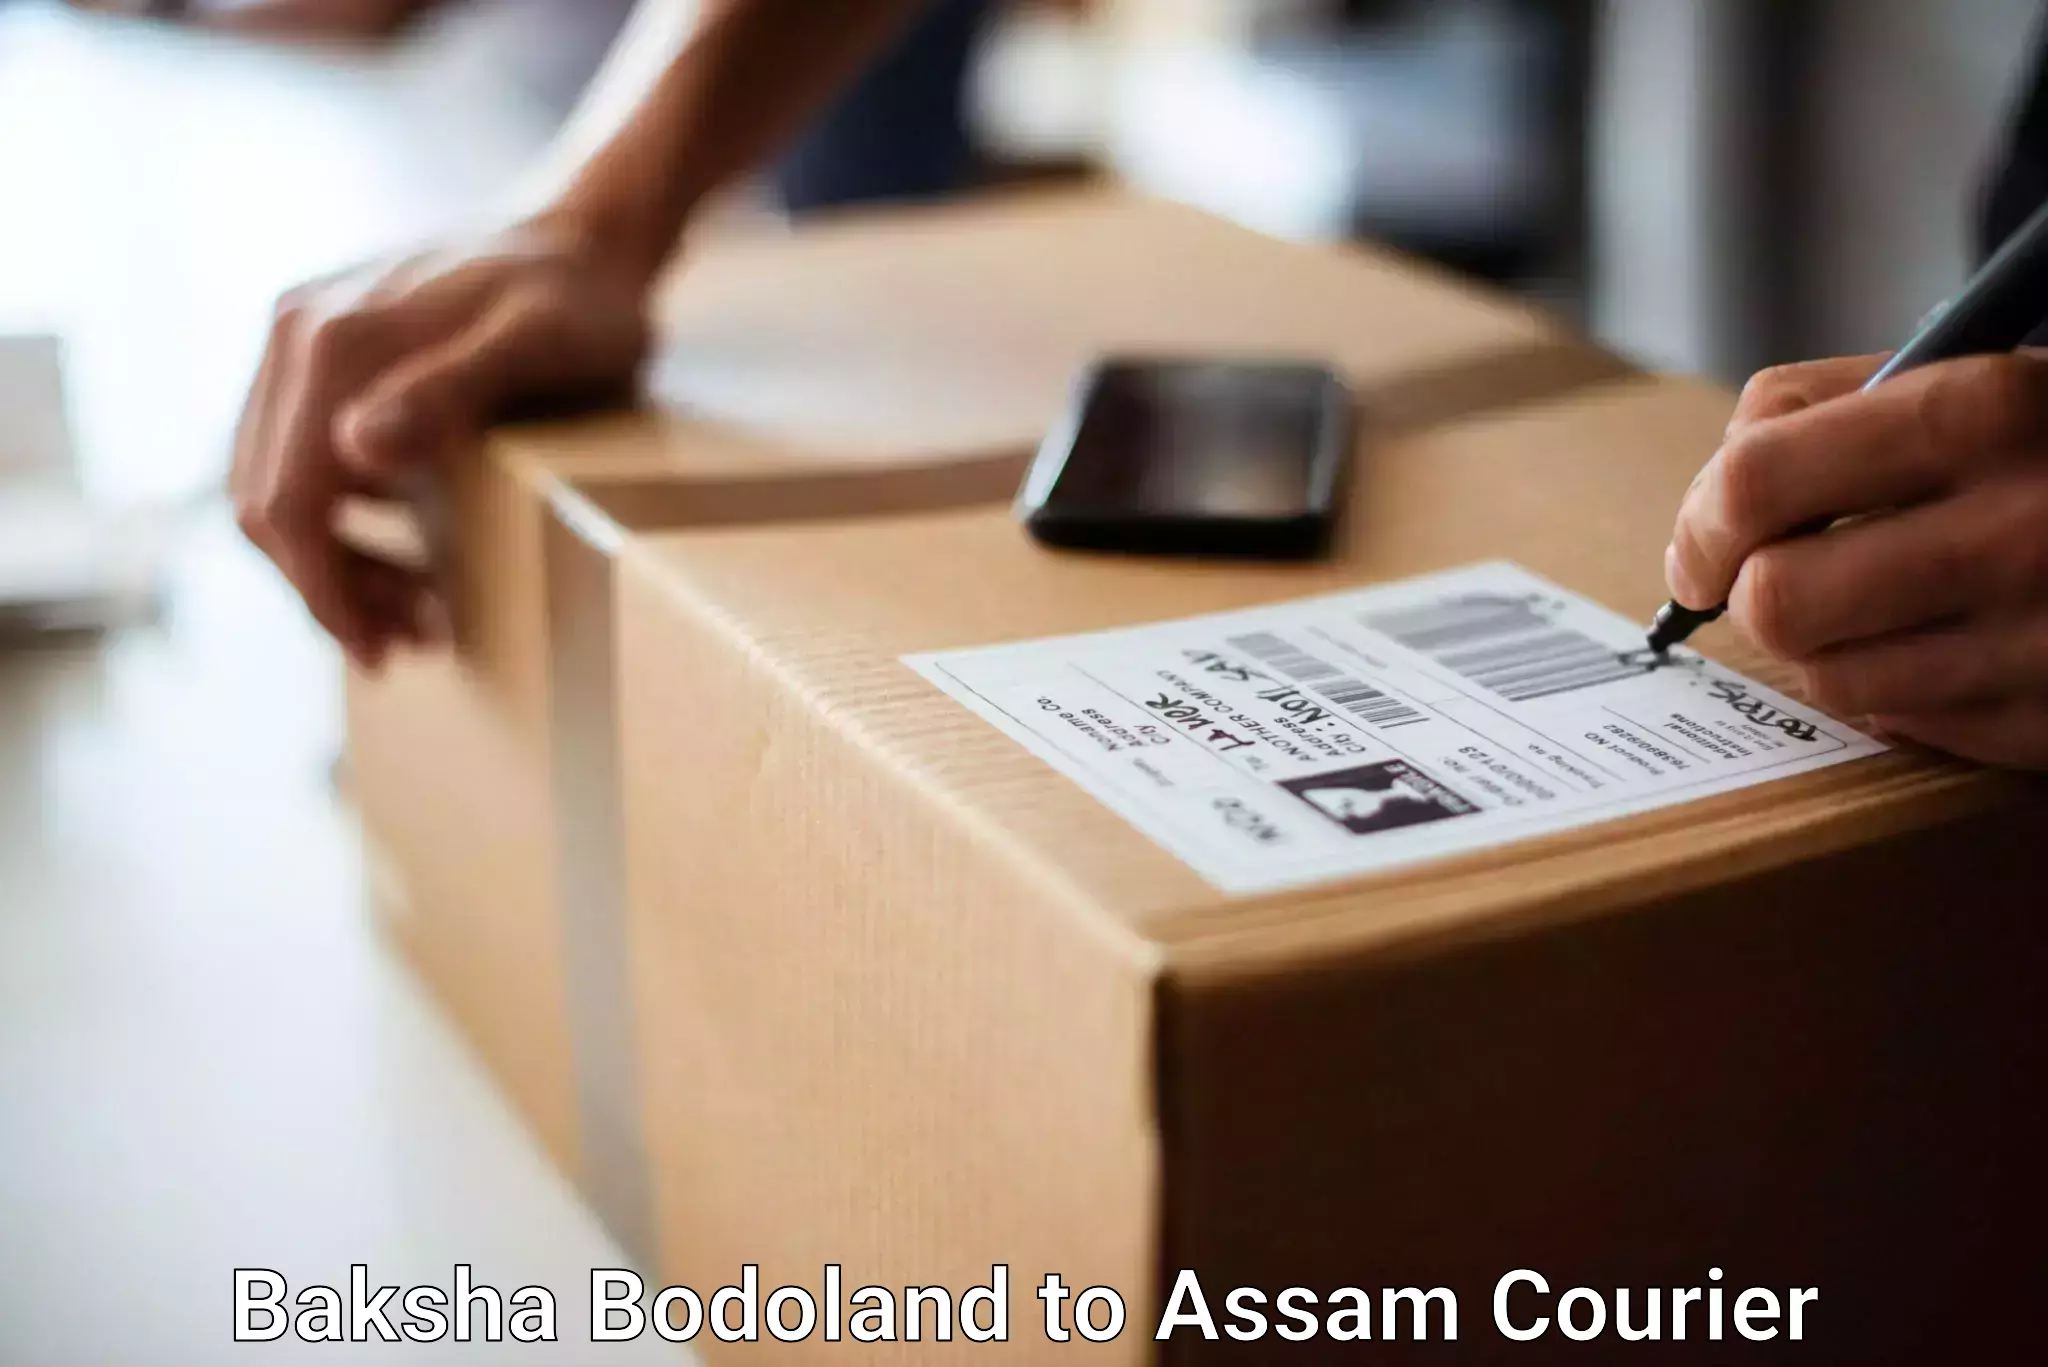 Luggage transport deals Baksha Bodoland to Baihata